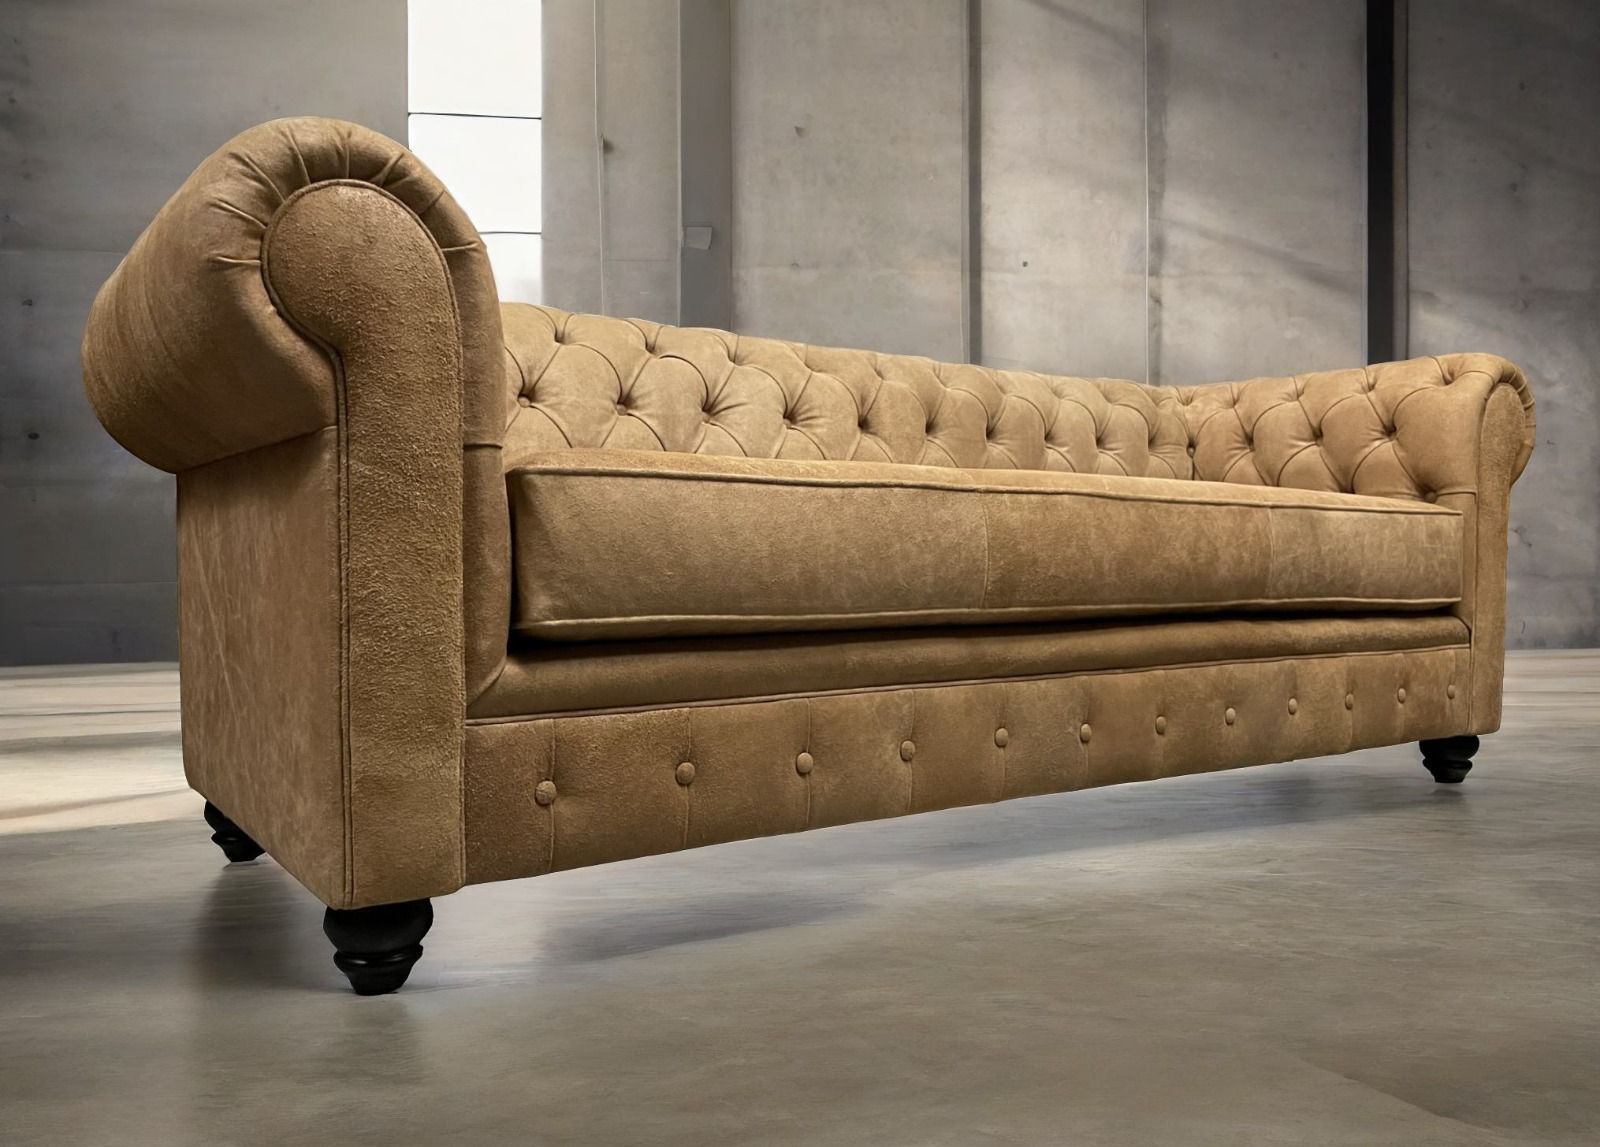 Sofa de Cuero – Chesterfield Color Distroi Oak, 240 cm de frente, Cojín único asiento, tres costuras, Respaldo Recto Clásico, Cuero 100% Natural Uruguayo 22